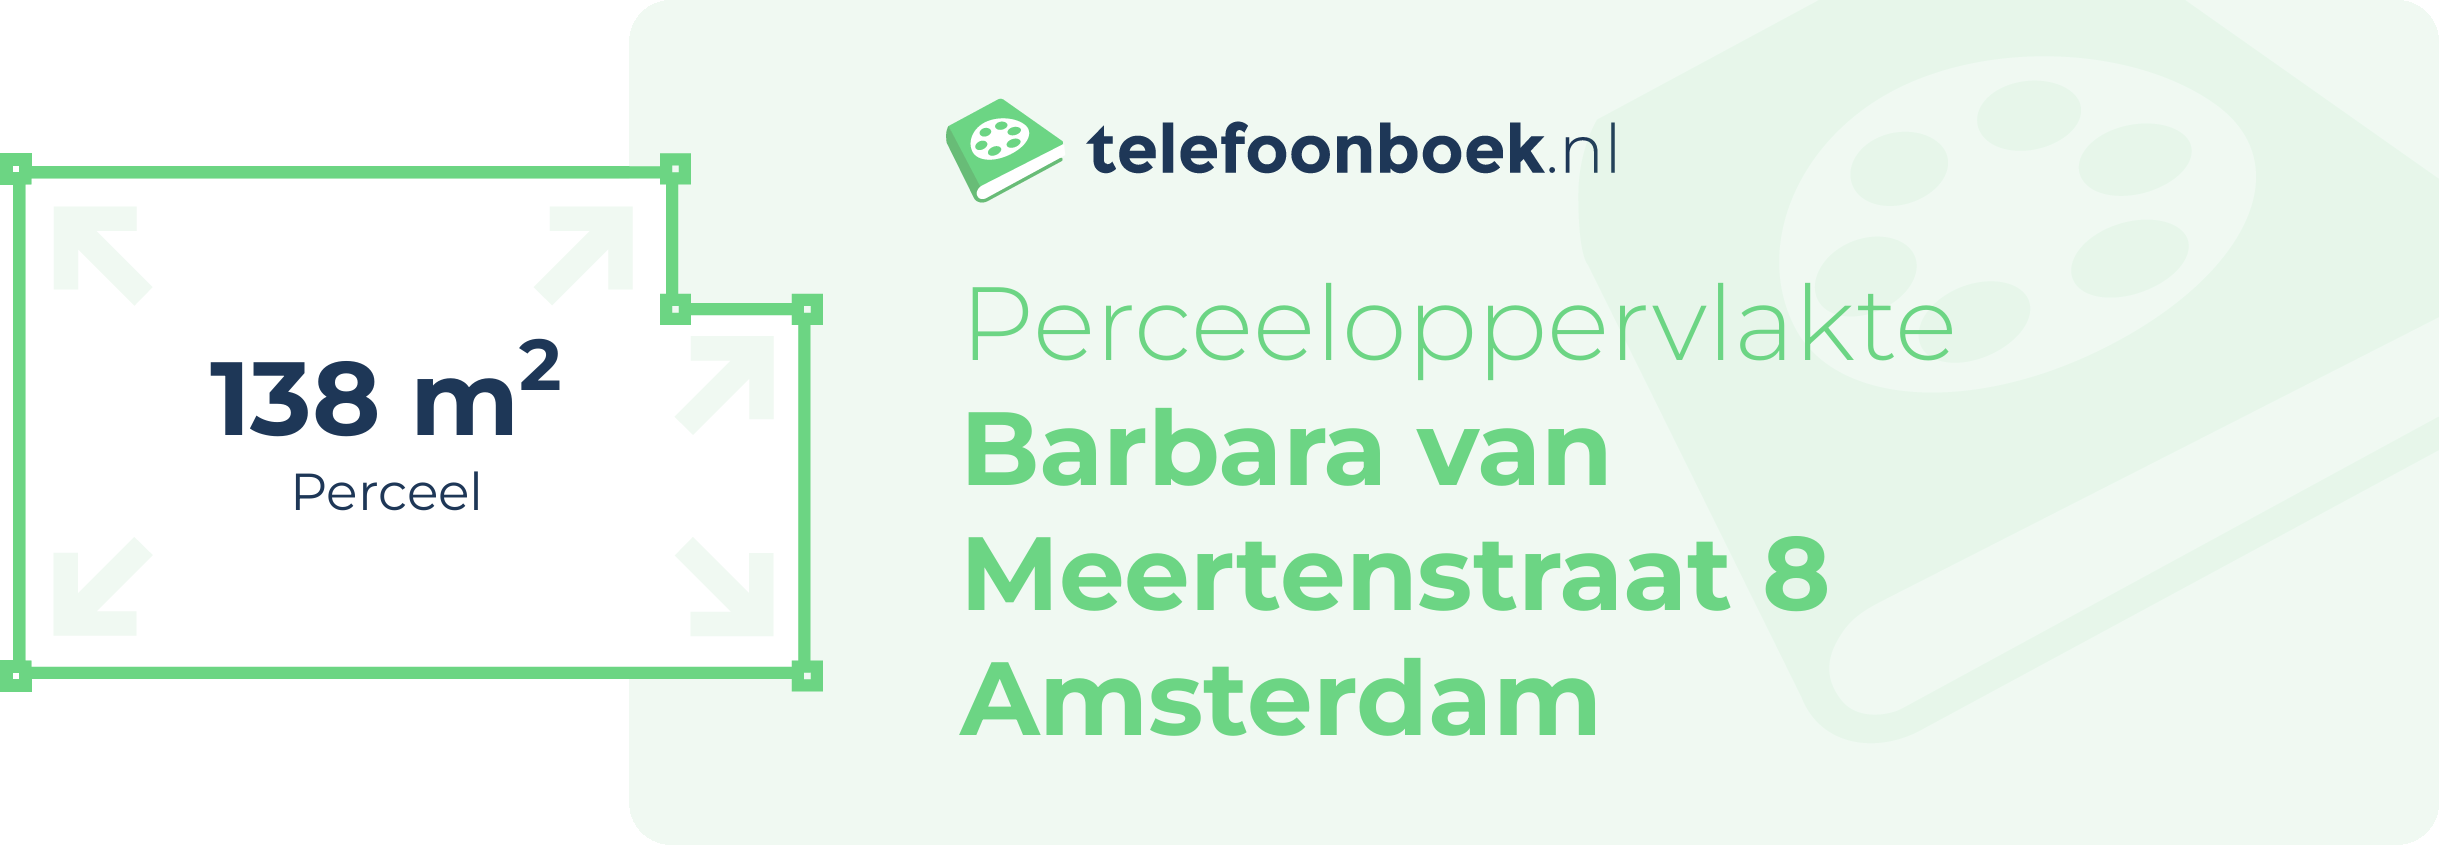 Perceeloppervlakte Barbara Van Meertenstraat 8 Amsterdam